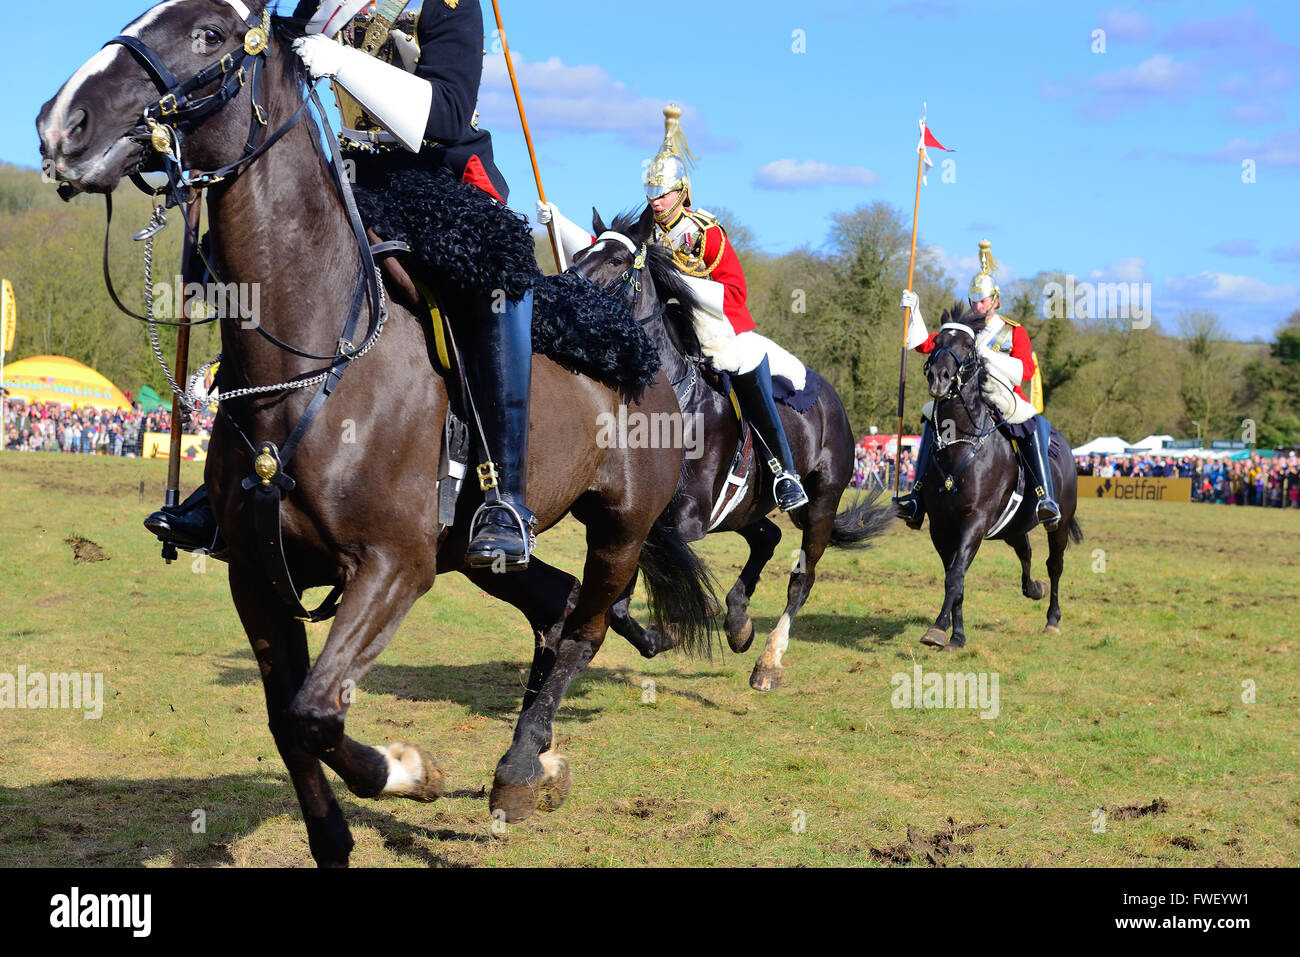 Einige der Hausrat-Kavallerie, die während der musikalischen Fahrt der Hausrat-Kavallerie, Lambourn Open Day, Berkshire, Großbritannien, auf dem Messegelände geladen wurde Stockfoto